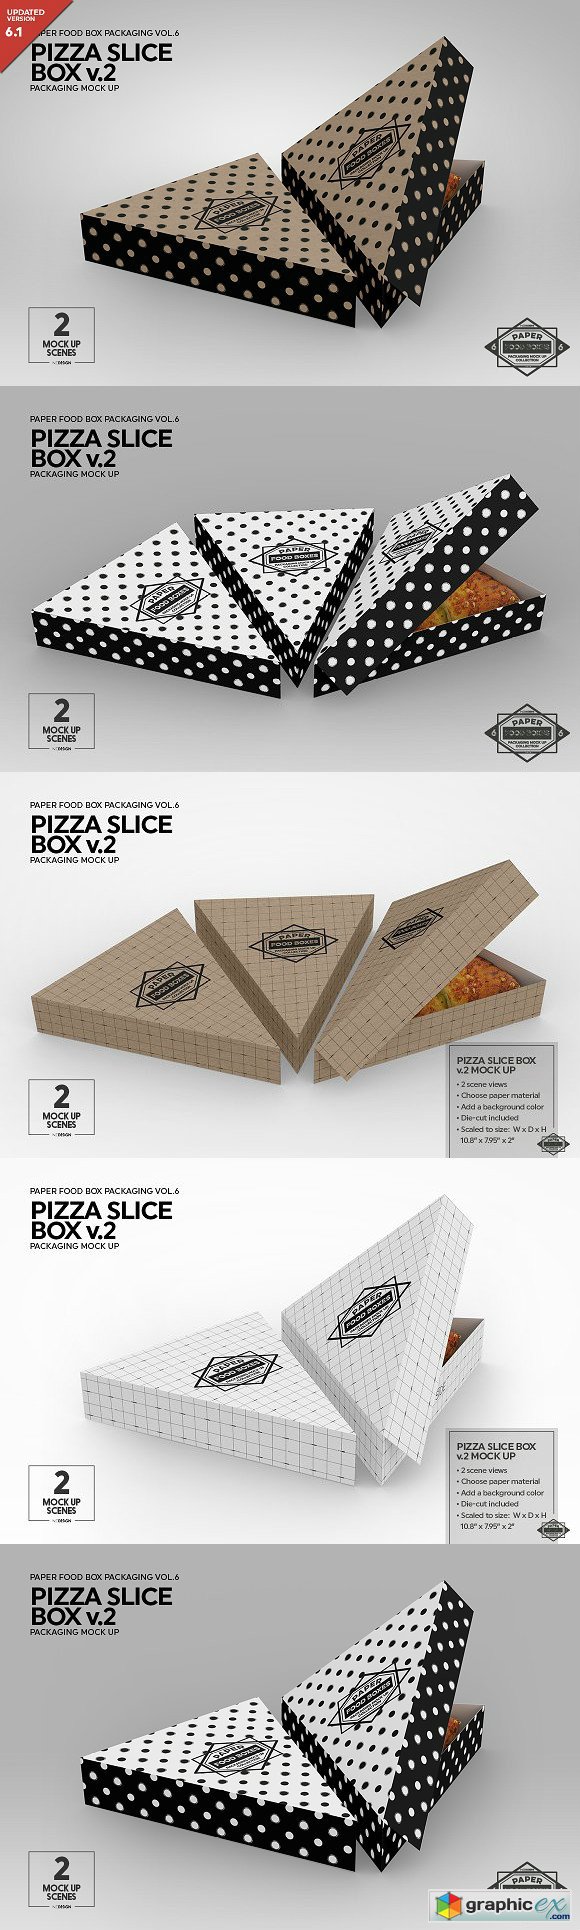 Pizza Slice Box v.2 Packaging MockUp